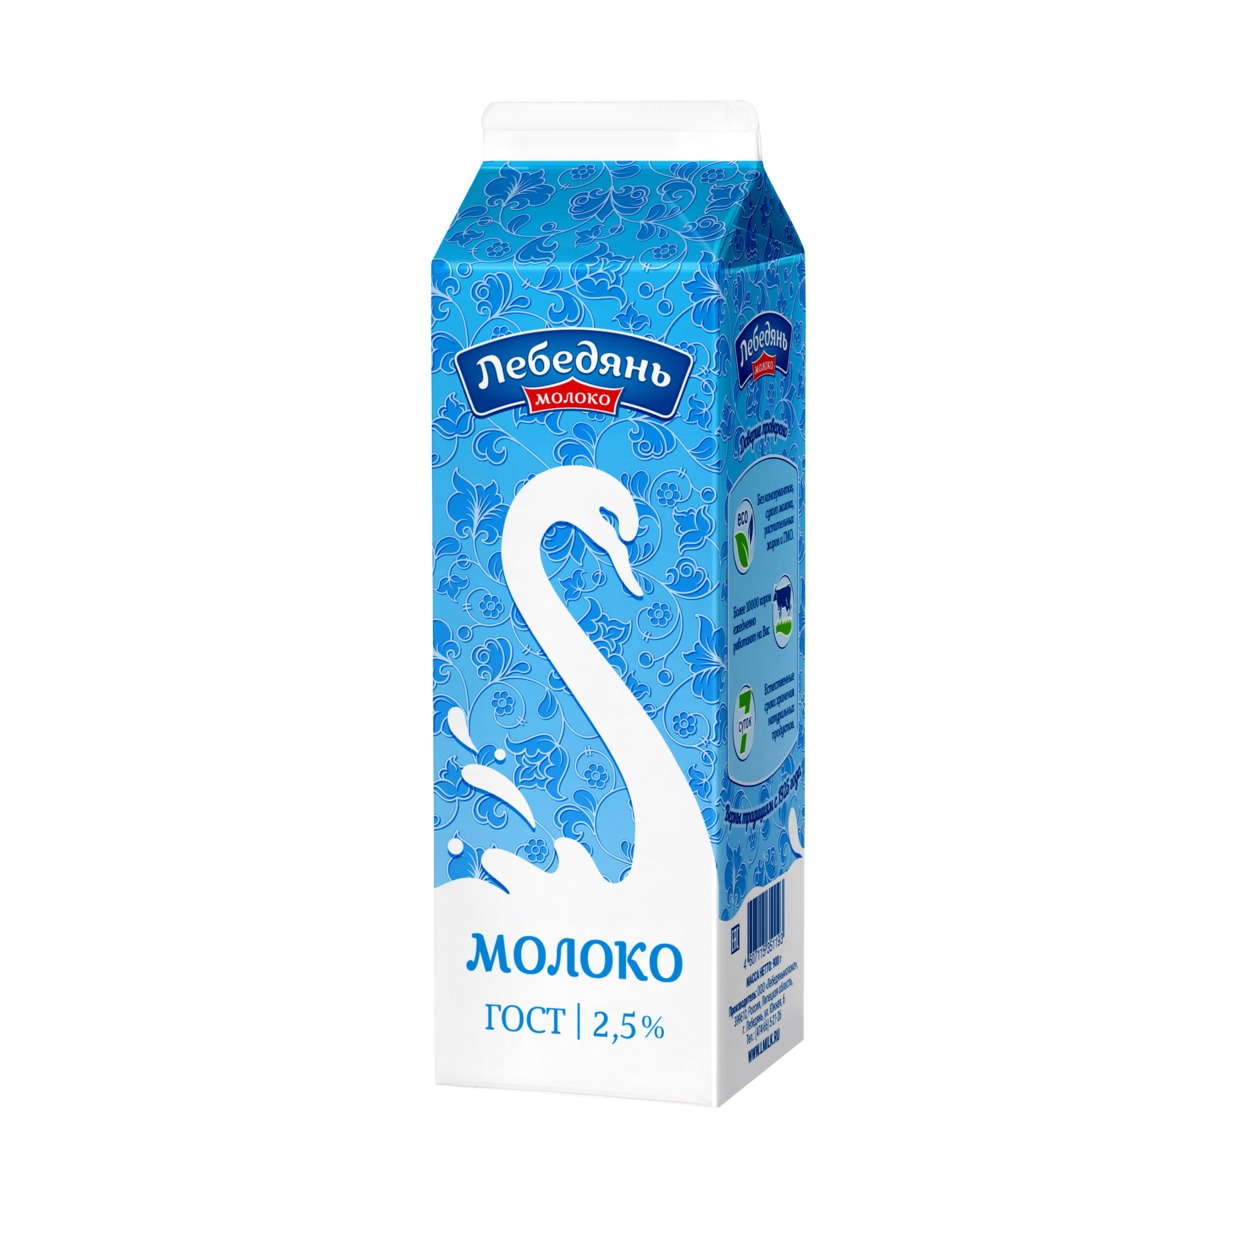 Молоко Лебедяньмолоко пастеризованное 2,5% 900г